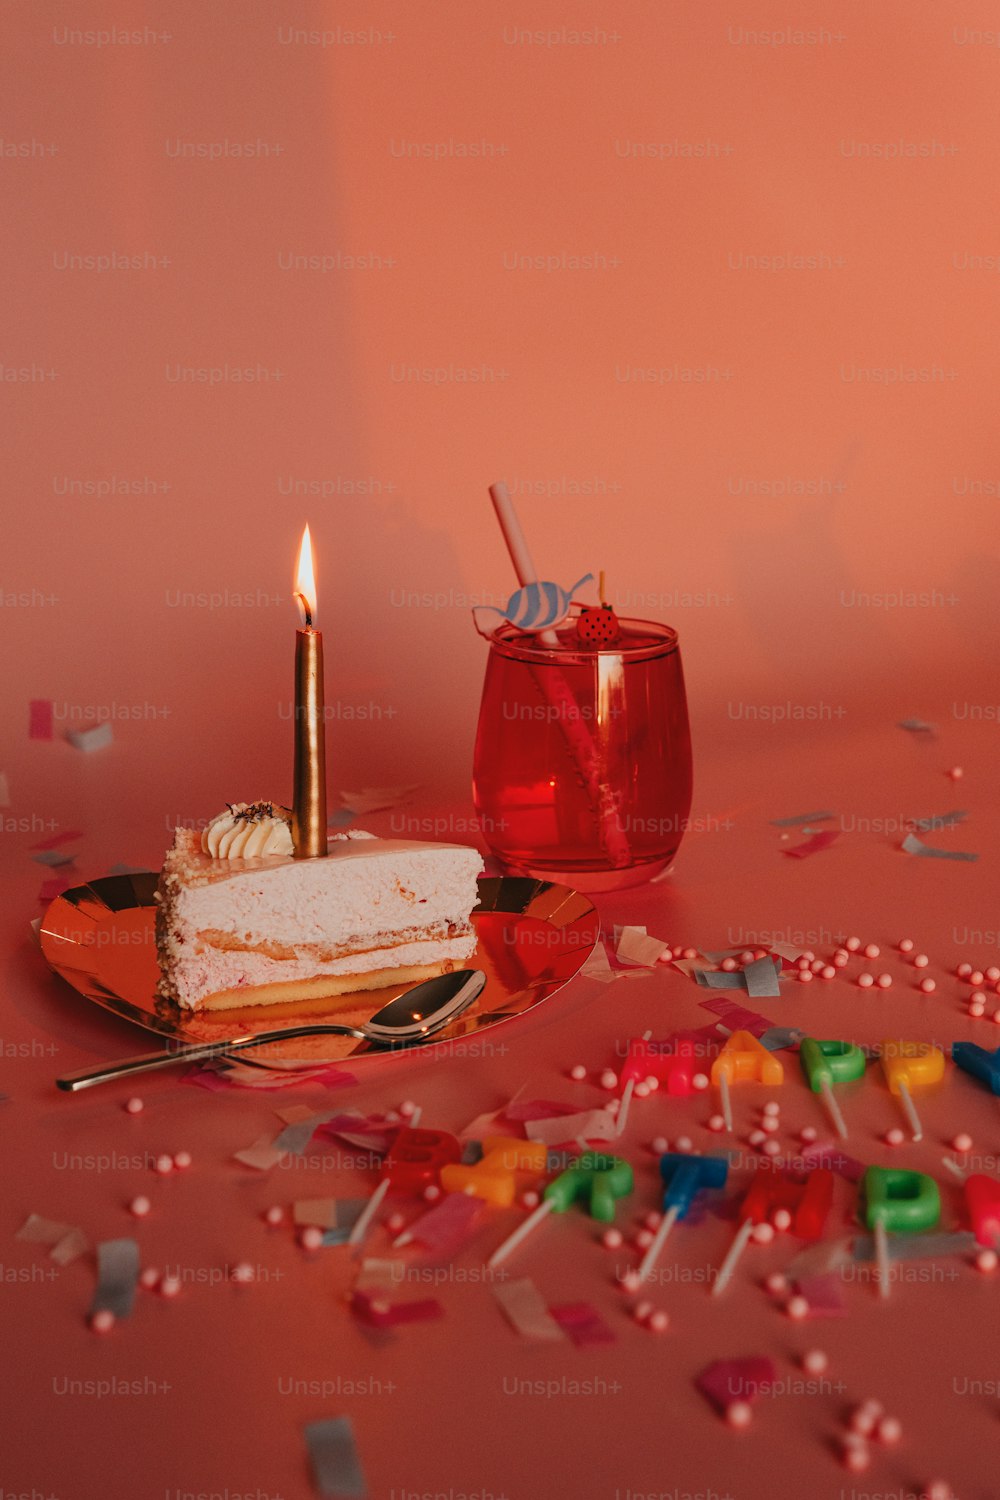 촛불 옆 테이블 위에 앉아있는 케이크 조각